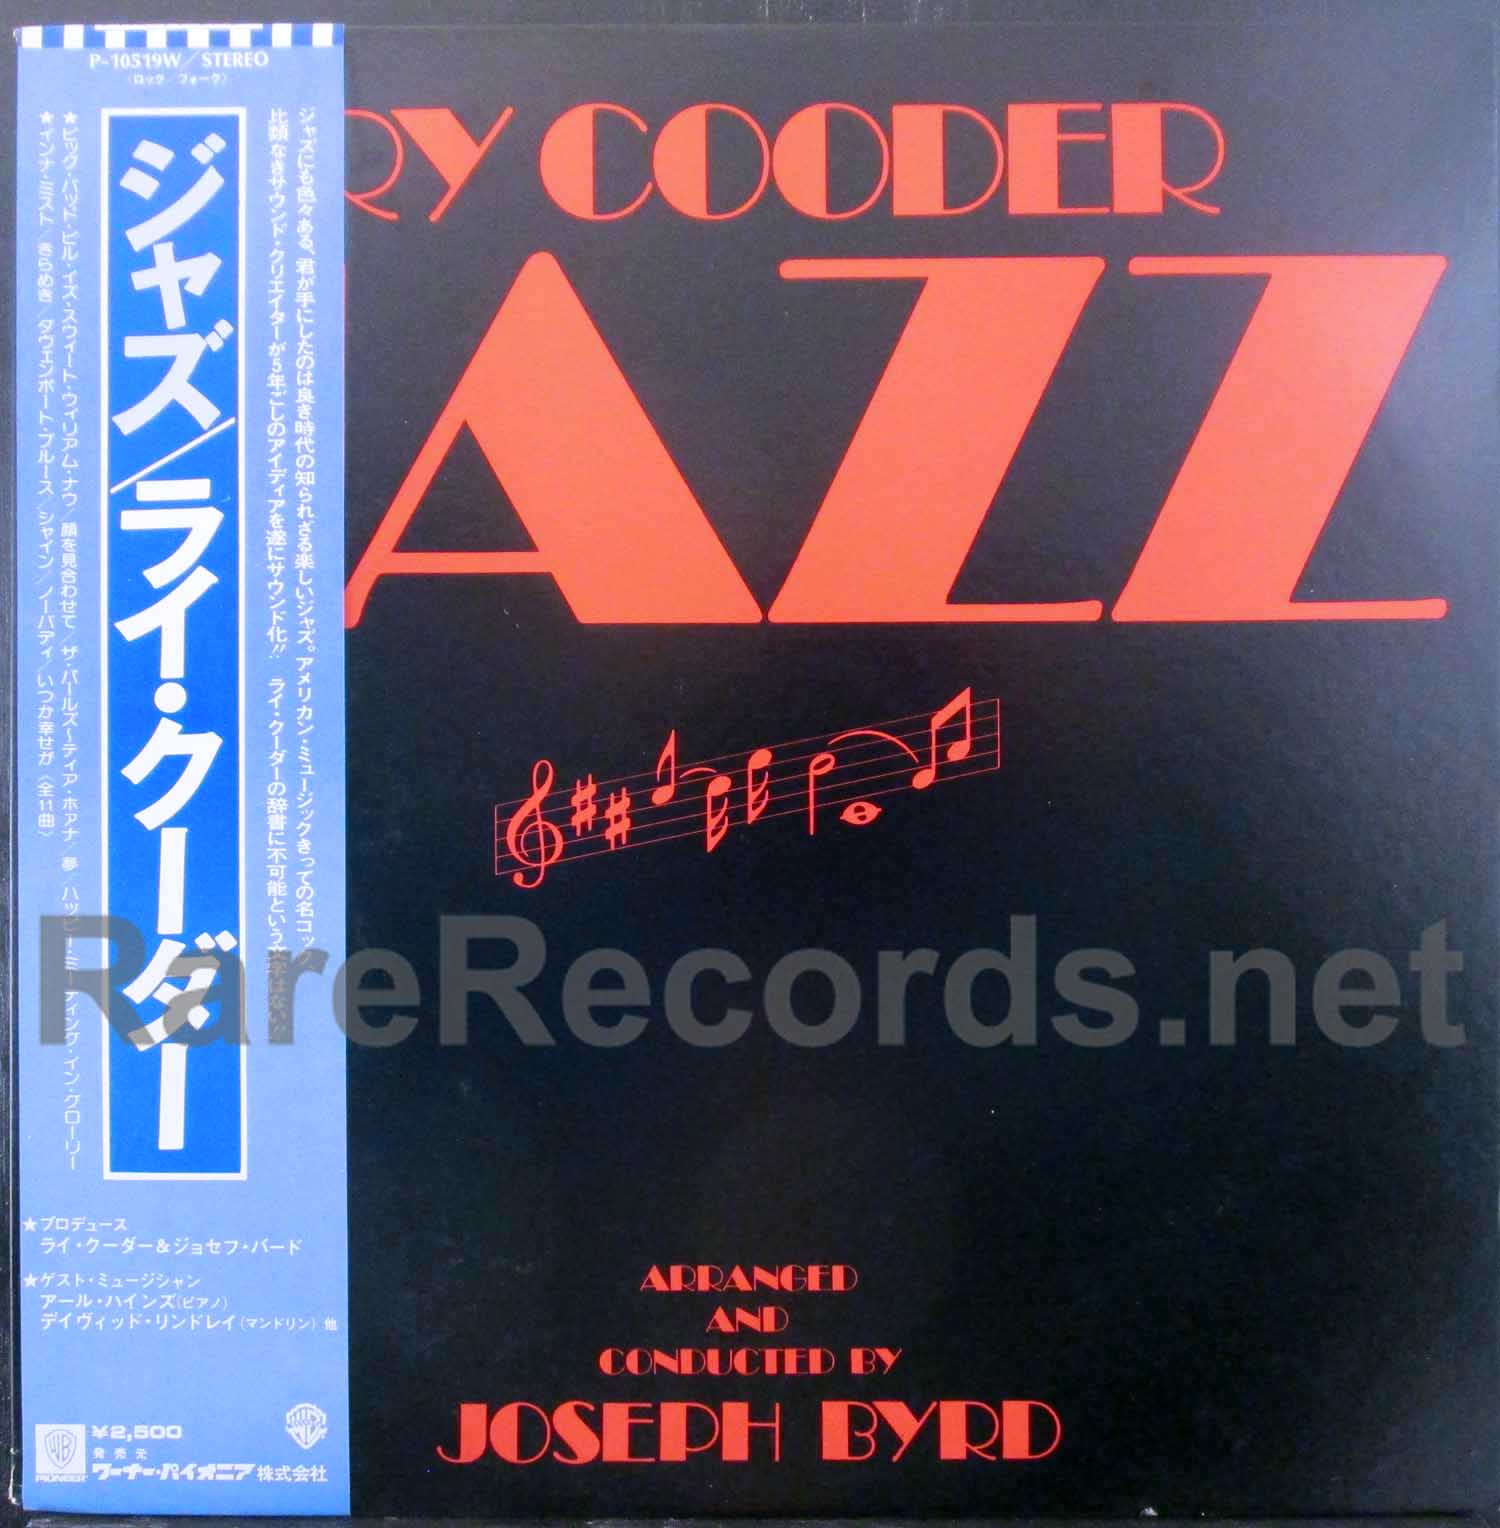 ry cooder - jazz japan lp